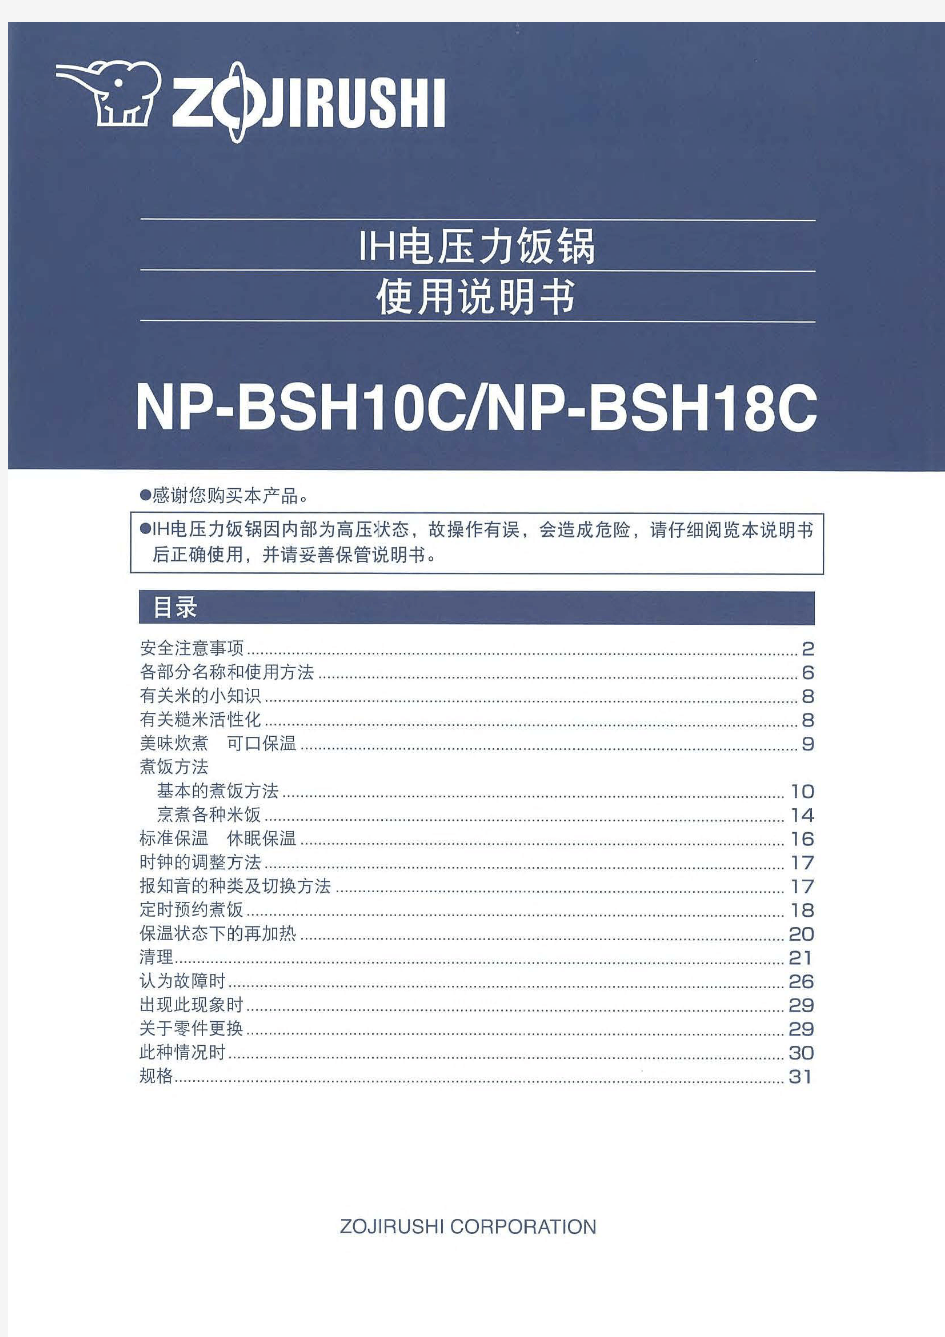 象印电饭煲NP-BB10、NP-BG10、NP-BSH10C通用中文说明书